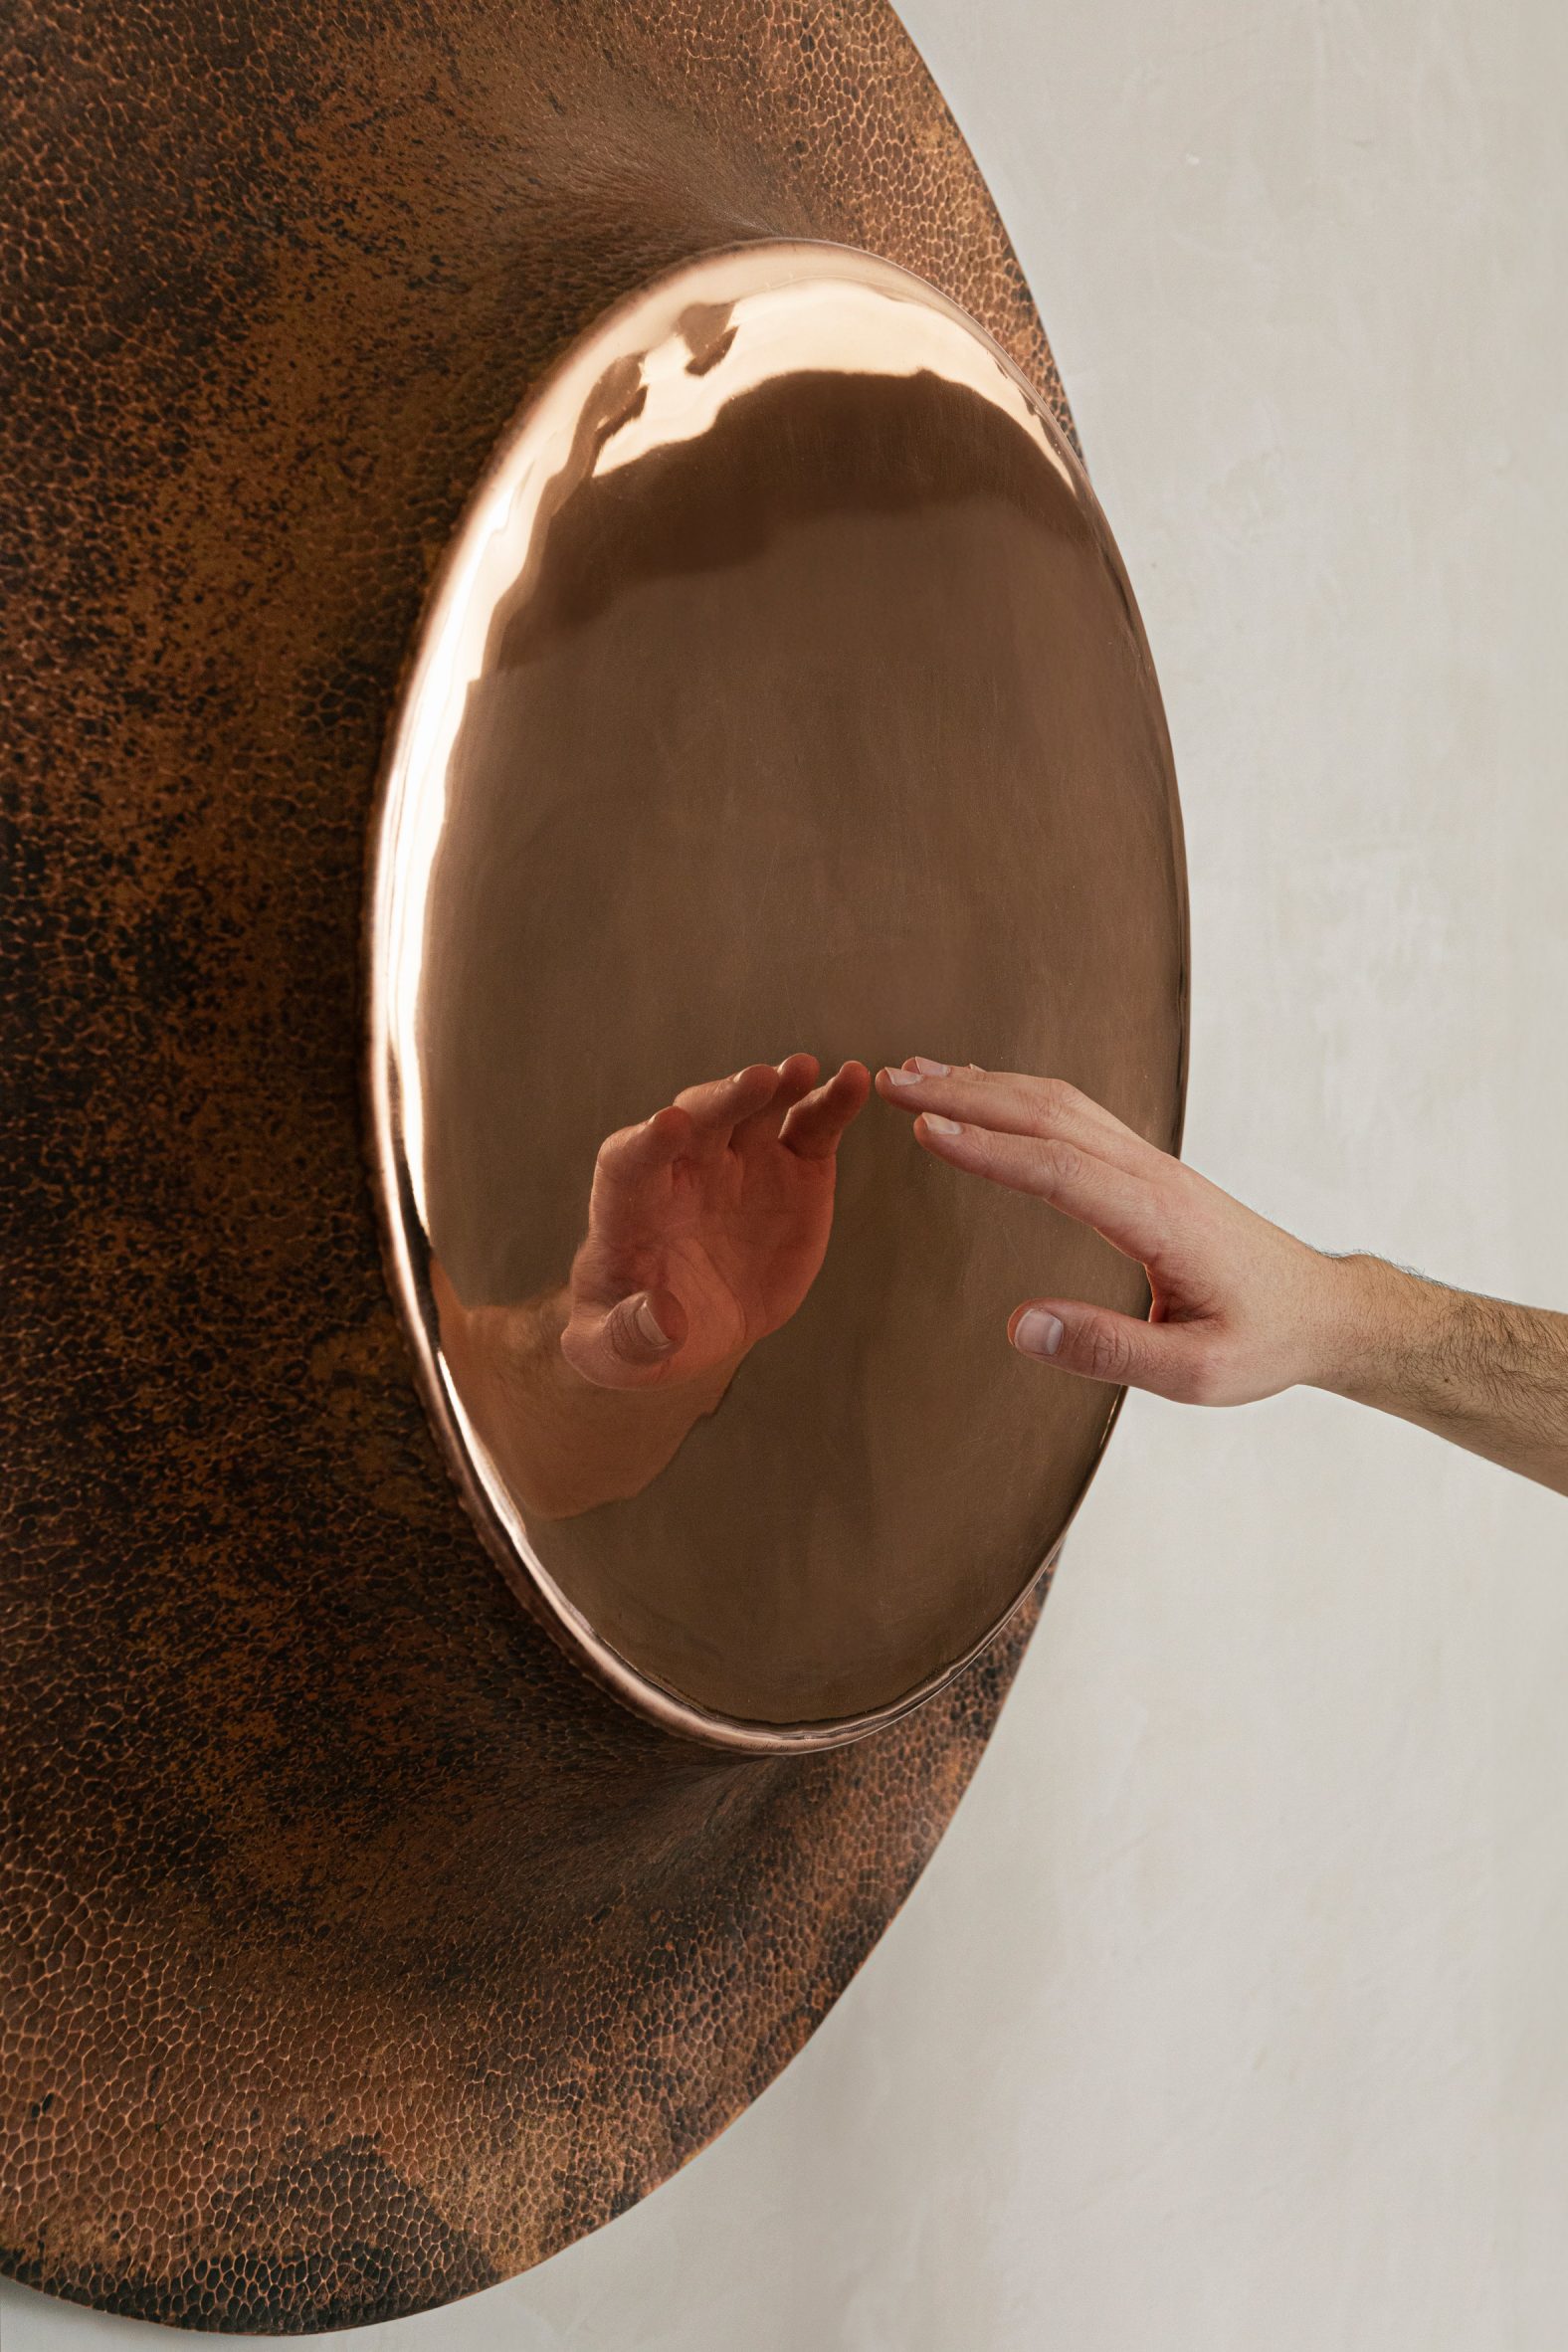 Close-up of Wall Mirror by Manu Bañó